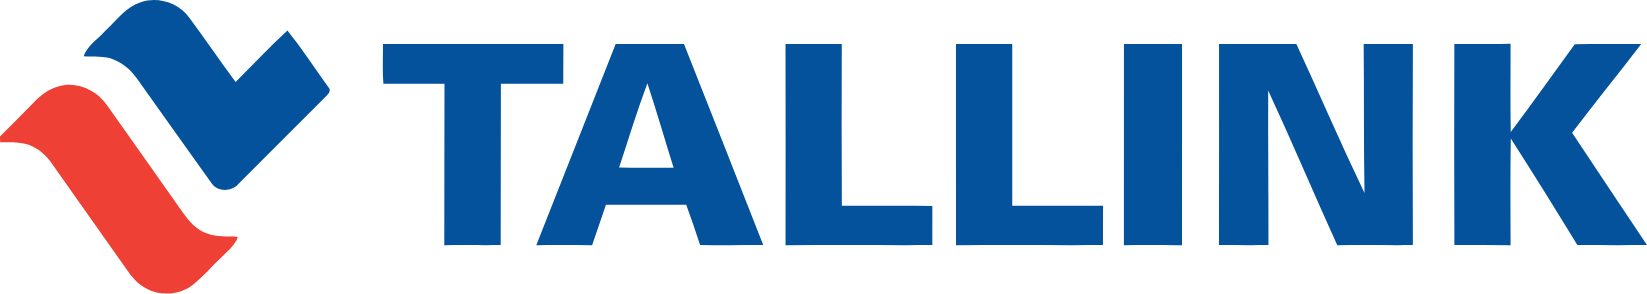 Tallink Grupp logo large (transparent PNG)